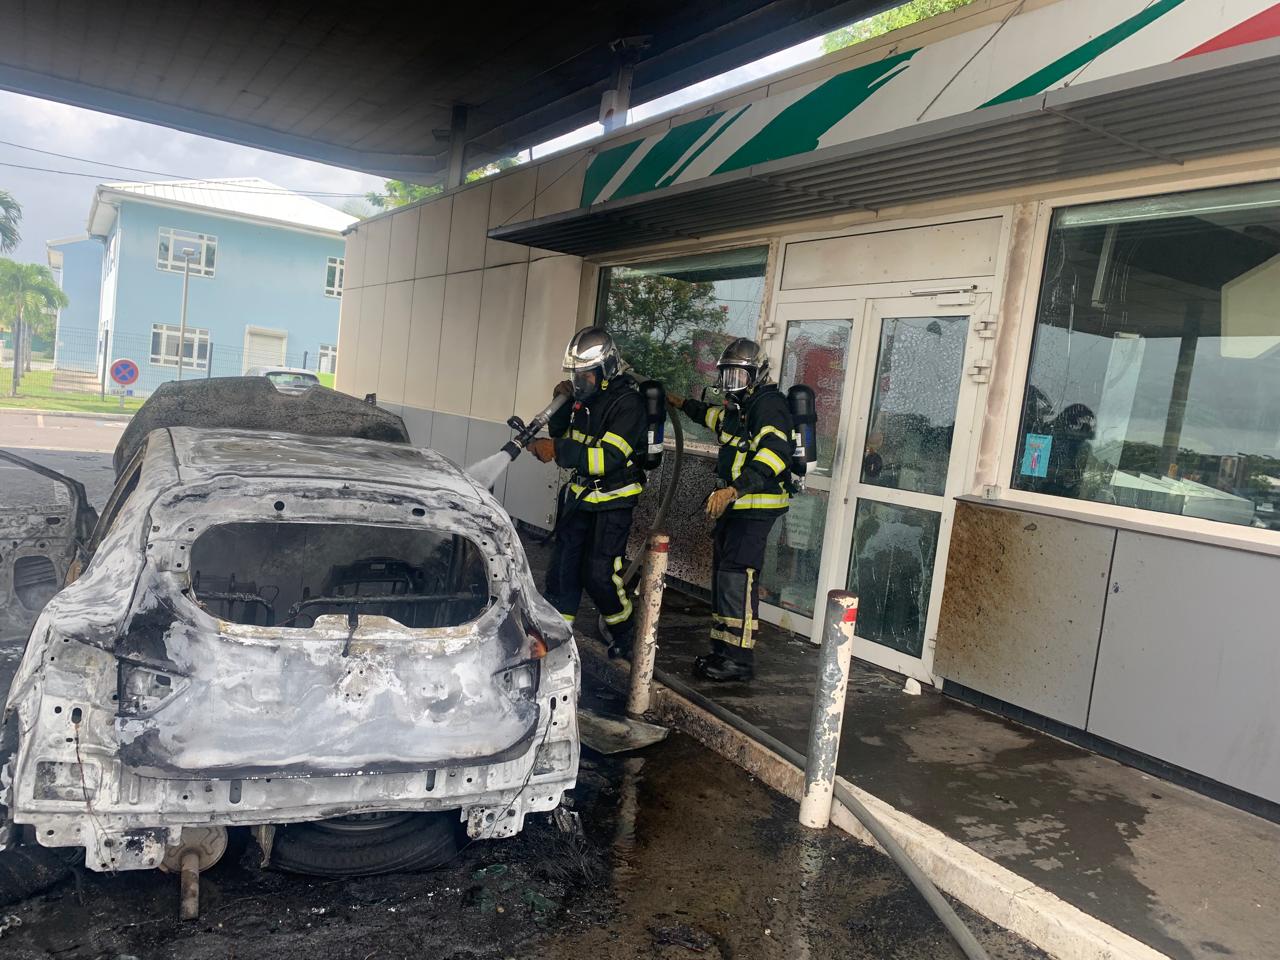     Un voiture en feu dans une station-service de Baie-Mahault 

